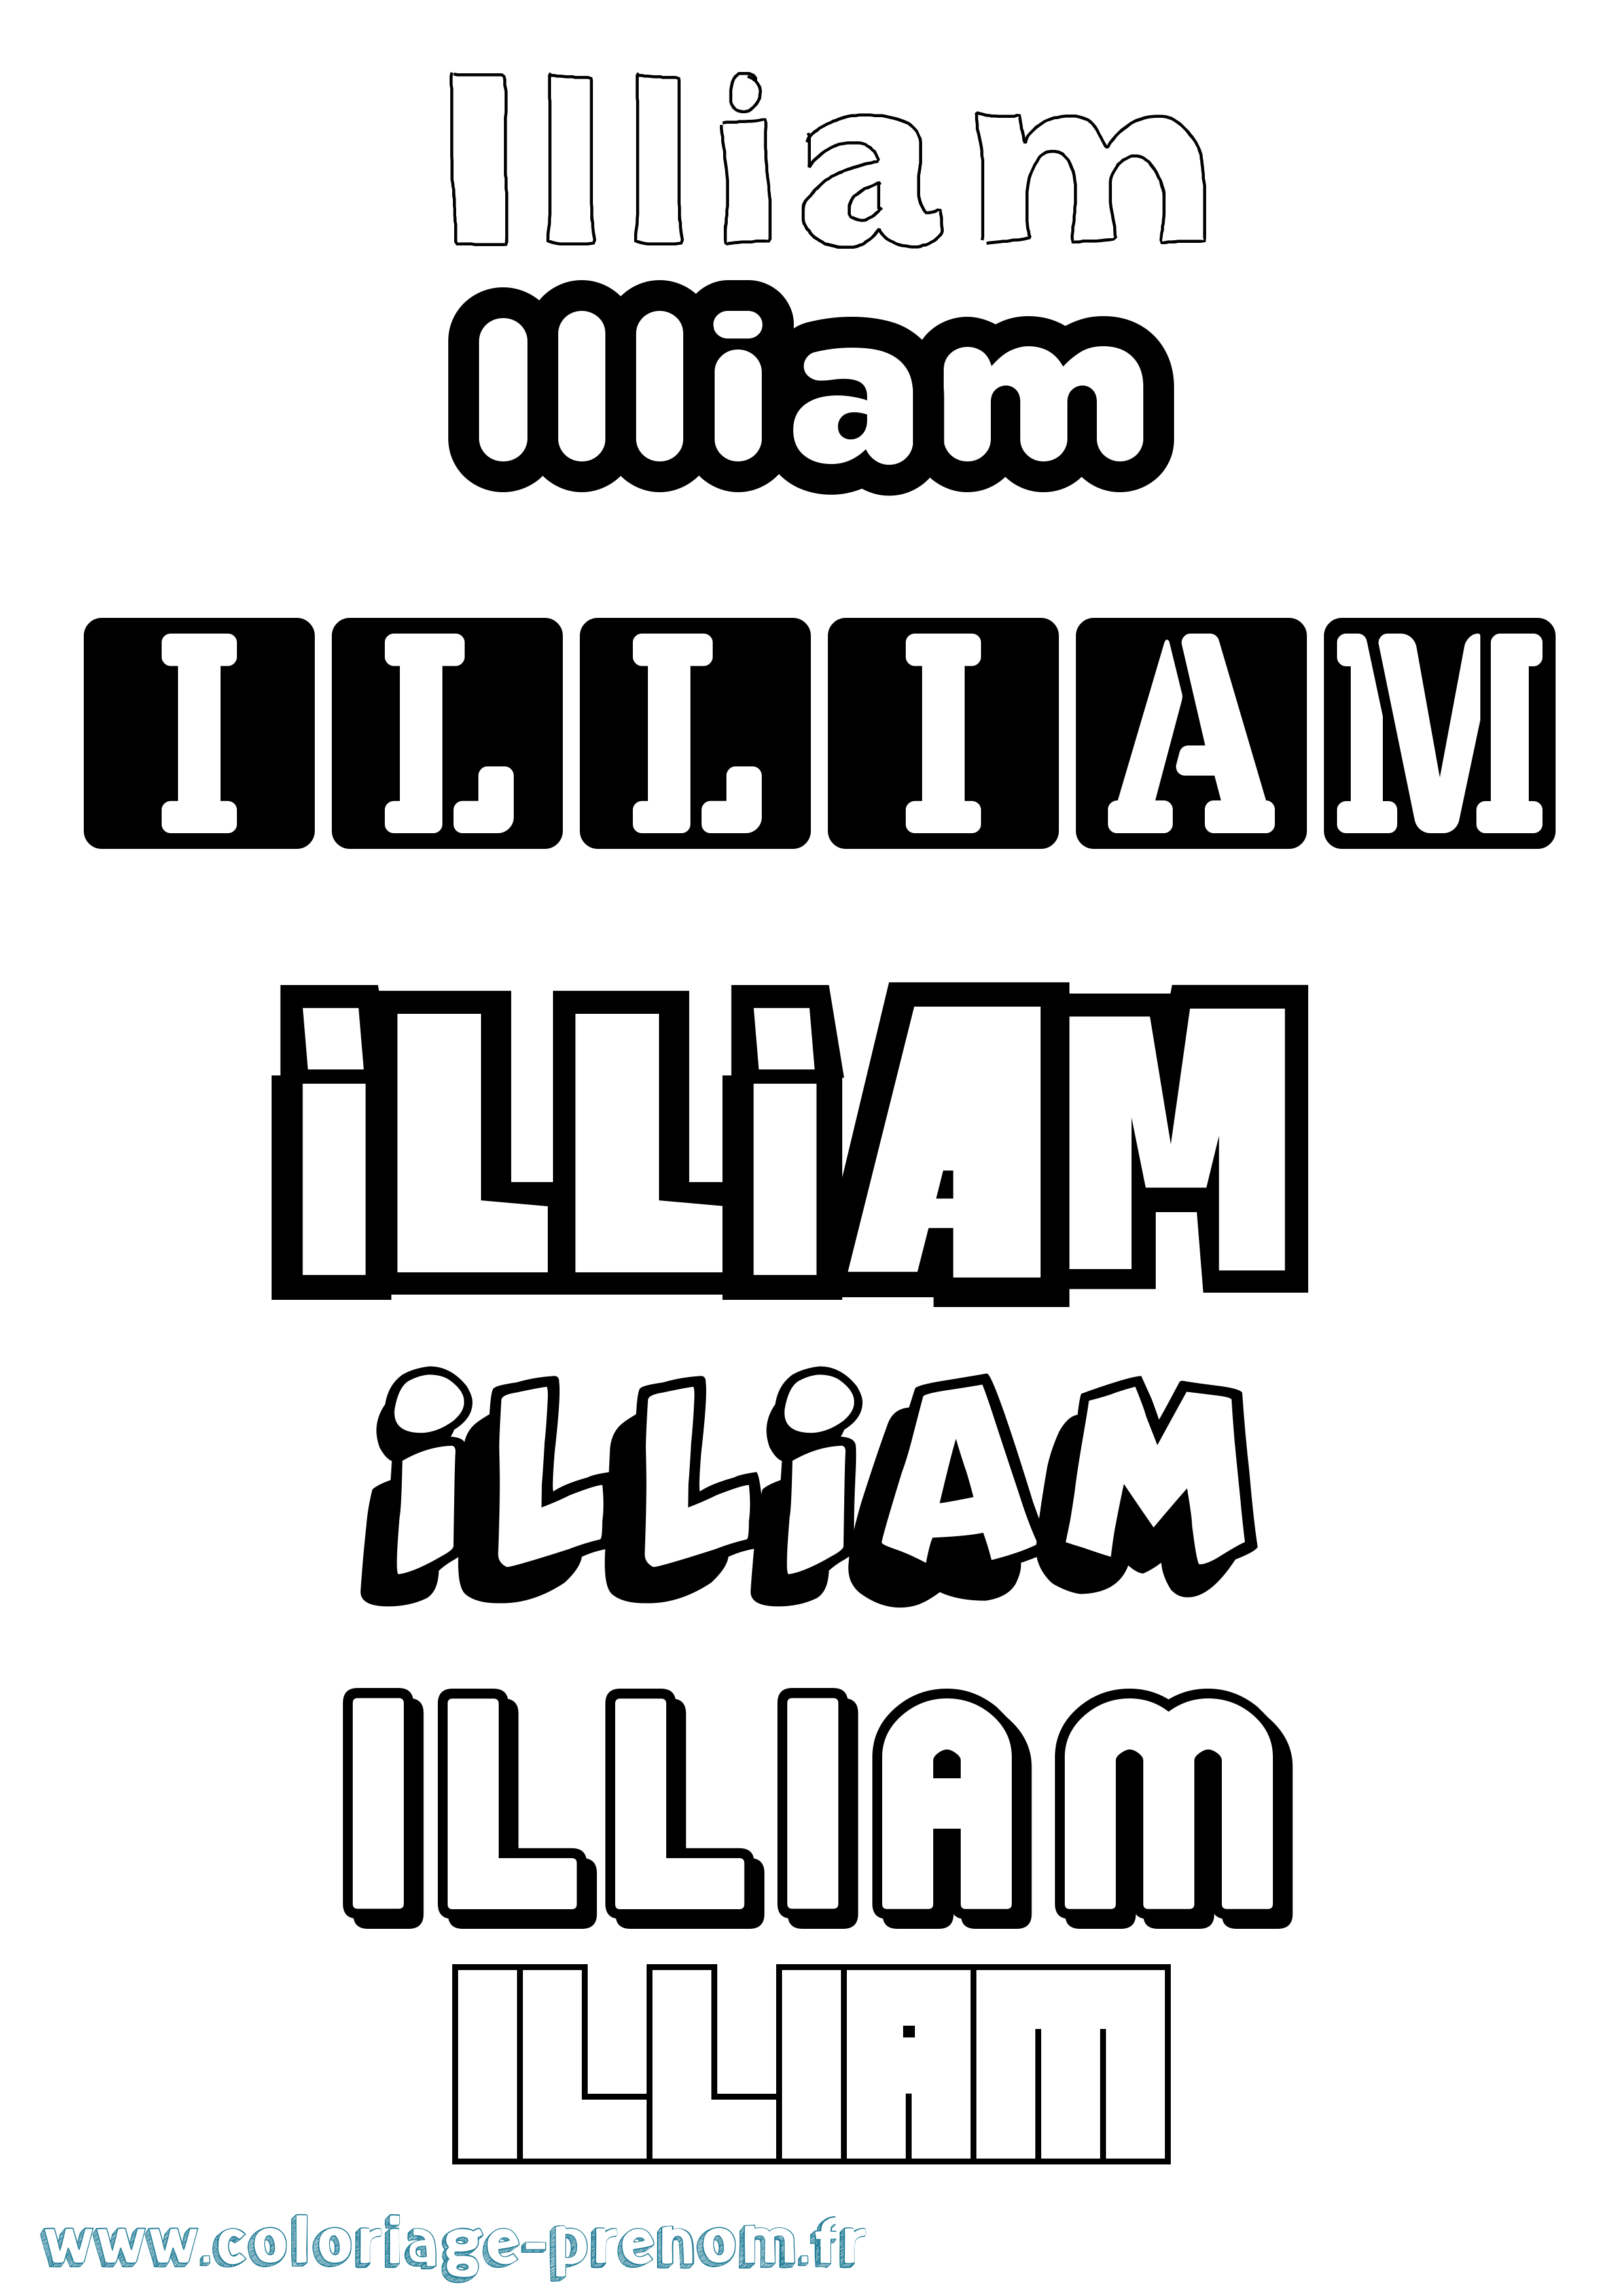 Coloriage prénom Illiam Simple